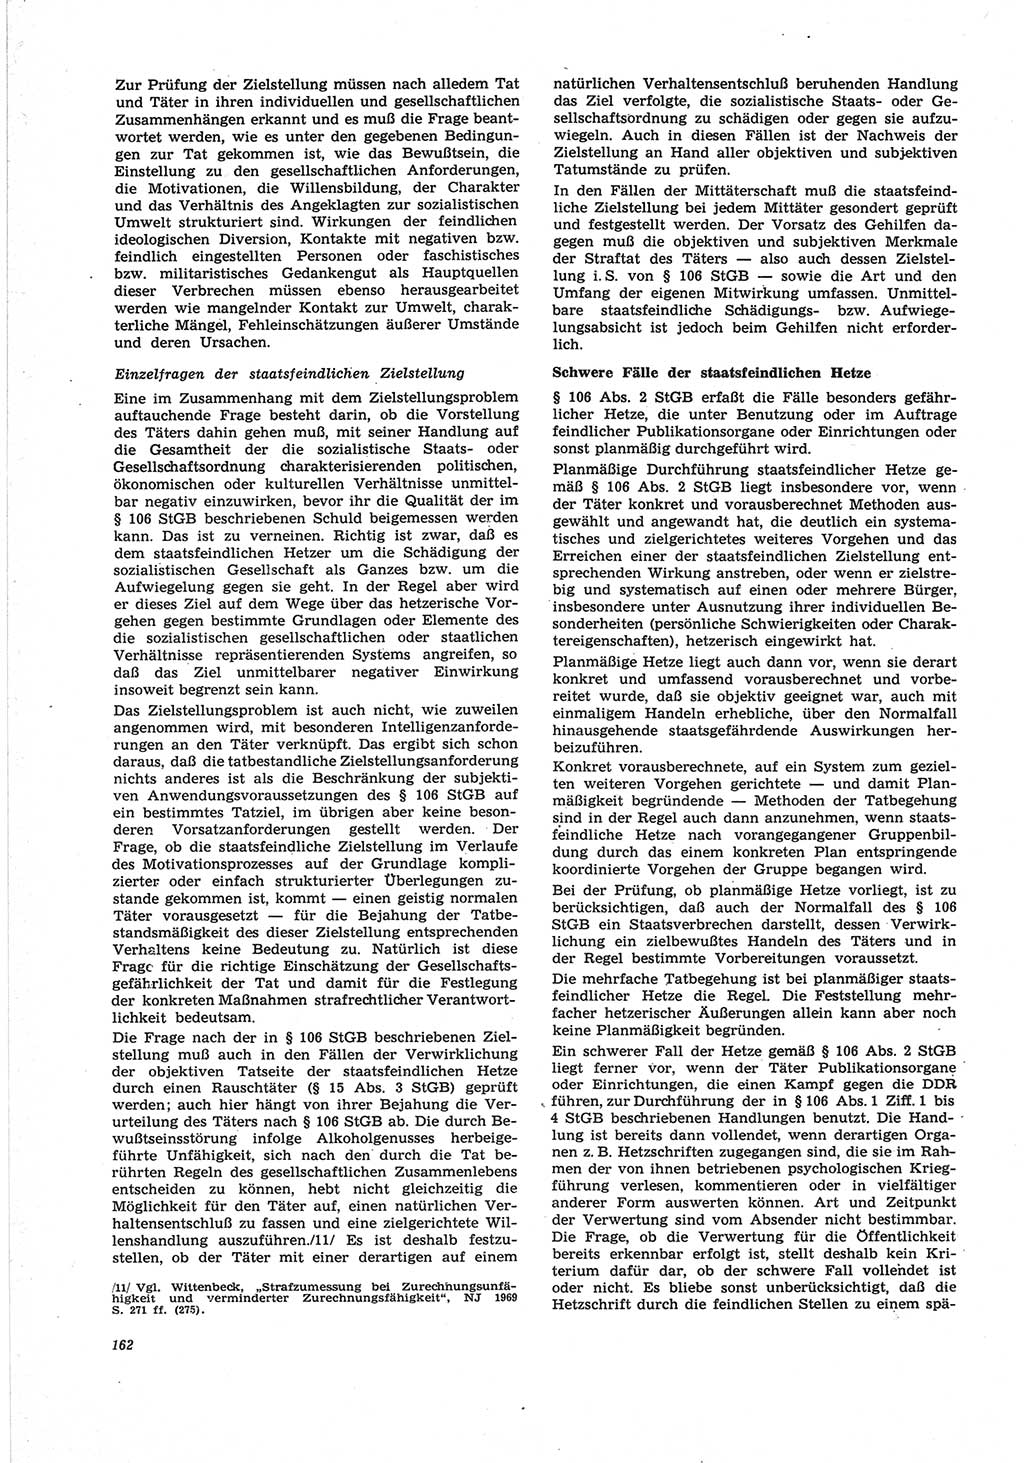 Neue Justiz (NJ), Zeitschrift für Recht und Rechtswissenschaft [Deutsche Demokratische Republik (DDR)], 25. Jahrgang 1971, Seite 162 (NJ DDR 1971, S. 162)